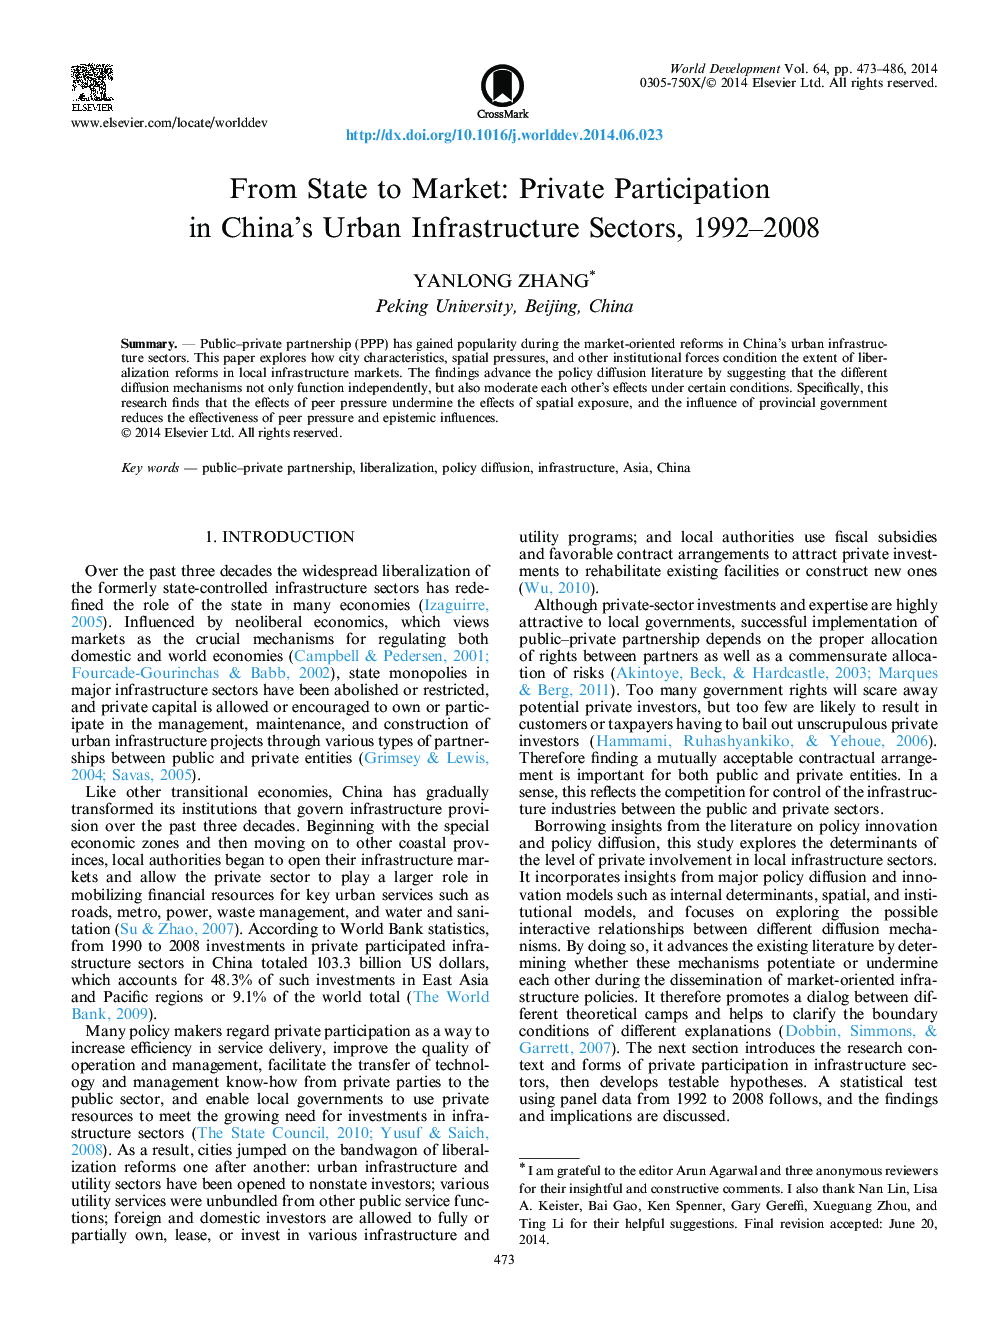 از دولت به بازار: مشارکت خصوصی در بخش های زیربنایی شهری چین، 1992-2008 